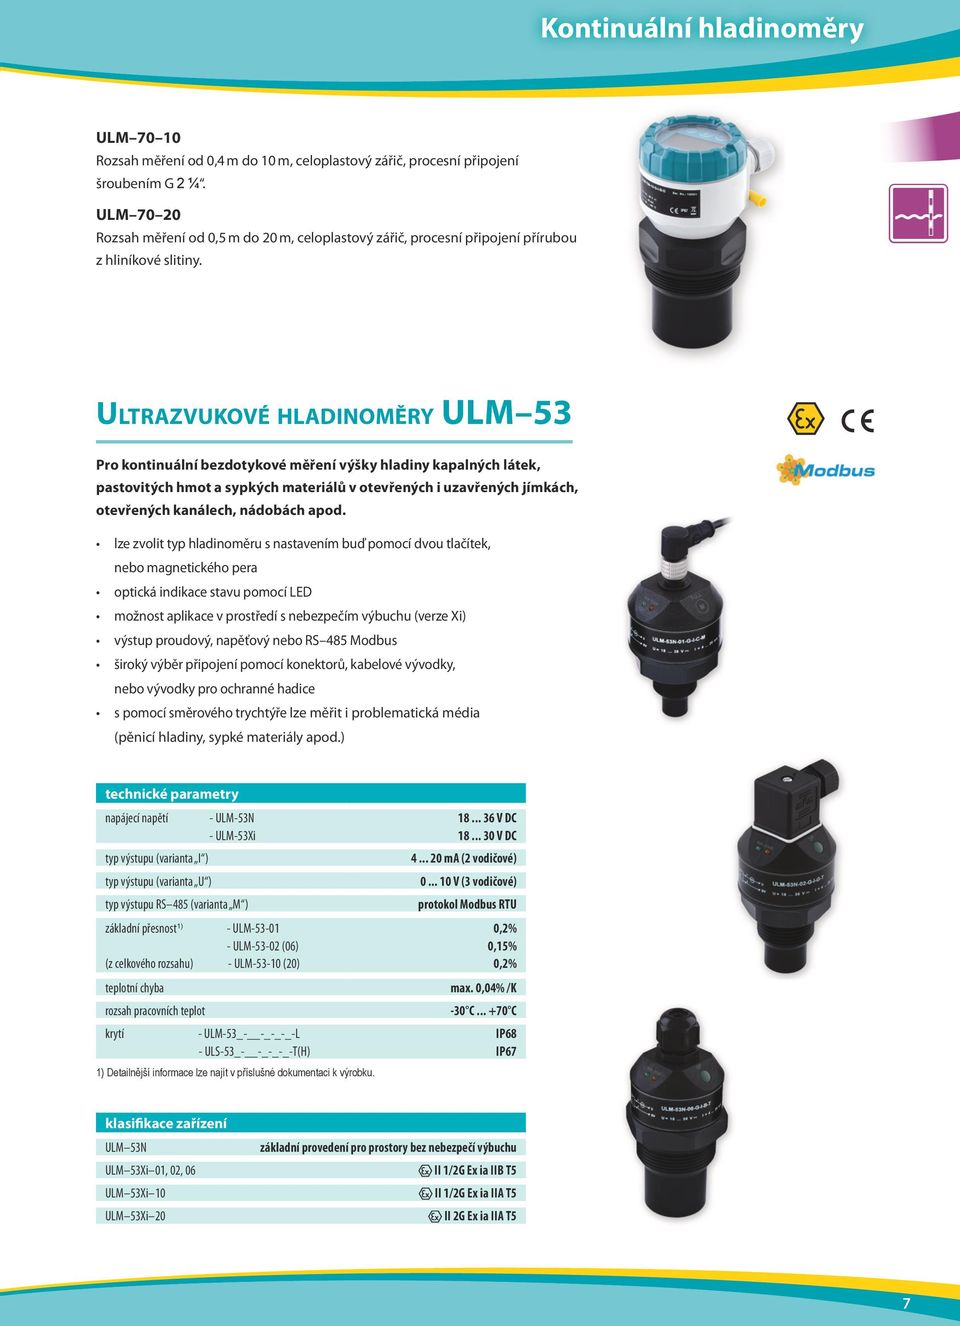 Ultrazvukové hladinoměry ULM 53 Pro kontinuální bezdotykové měření výšky hladiny kapalných látek, pastovitých hmot a sypkých materiálů v otevřených i uzavřených jímkách, otevřených kanálech, nádobách